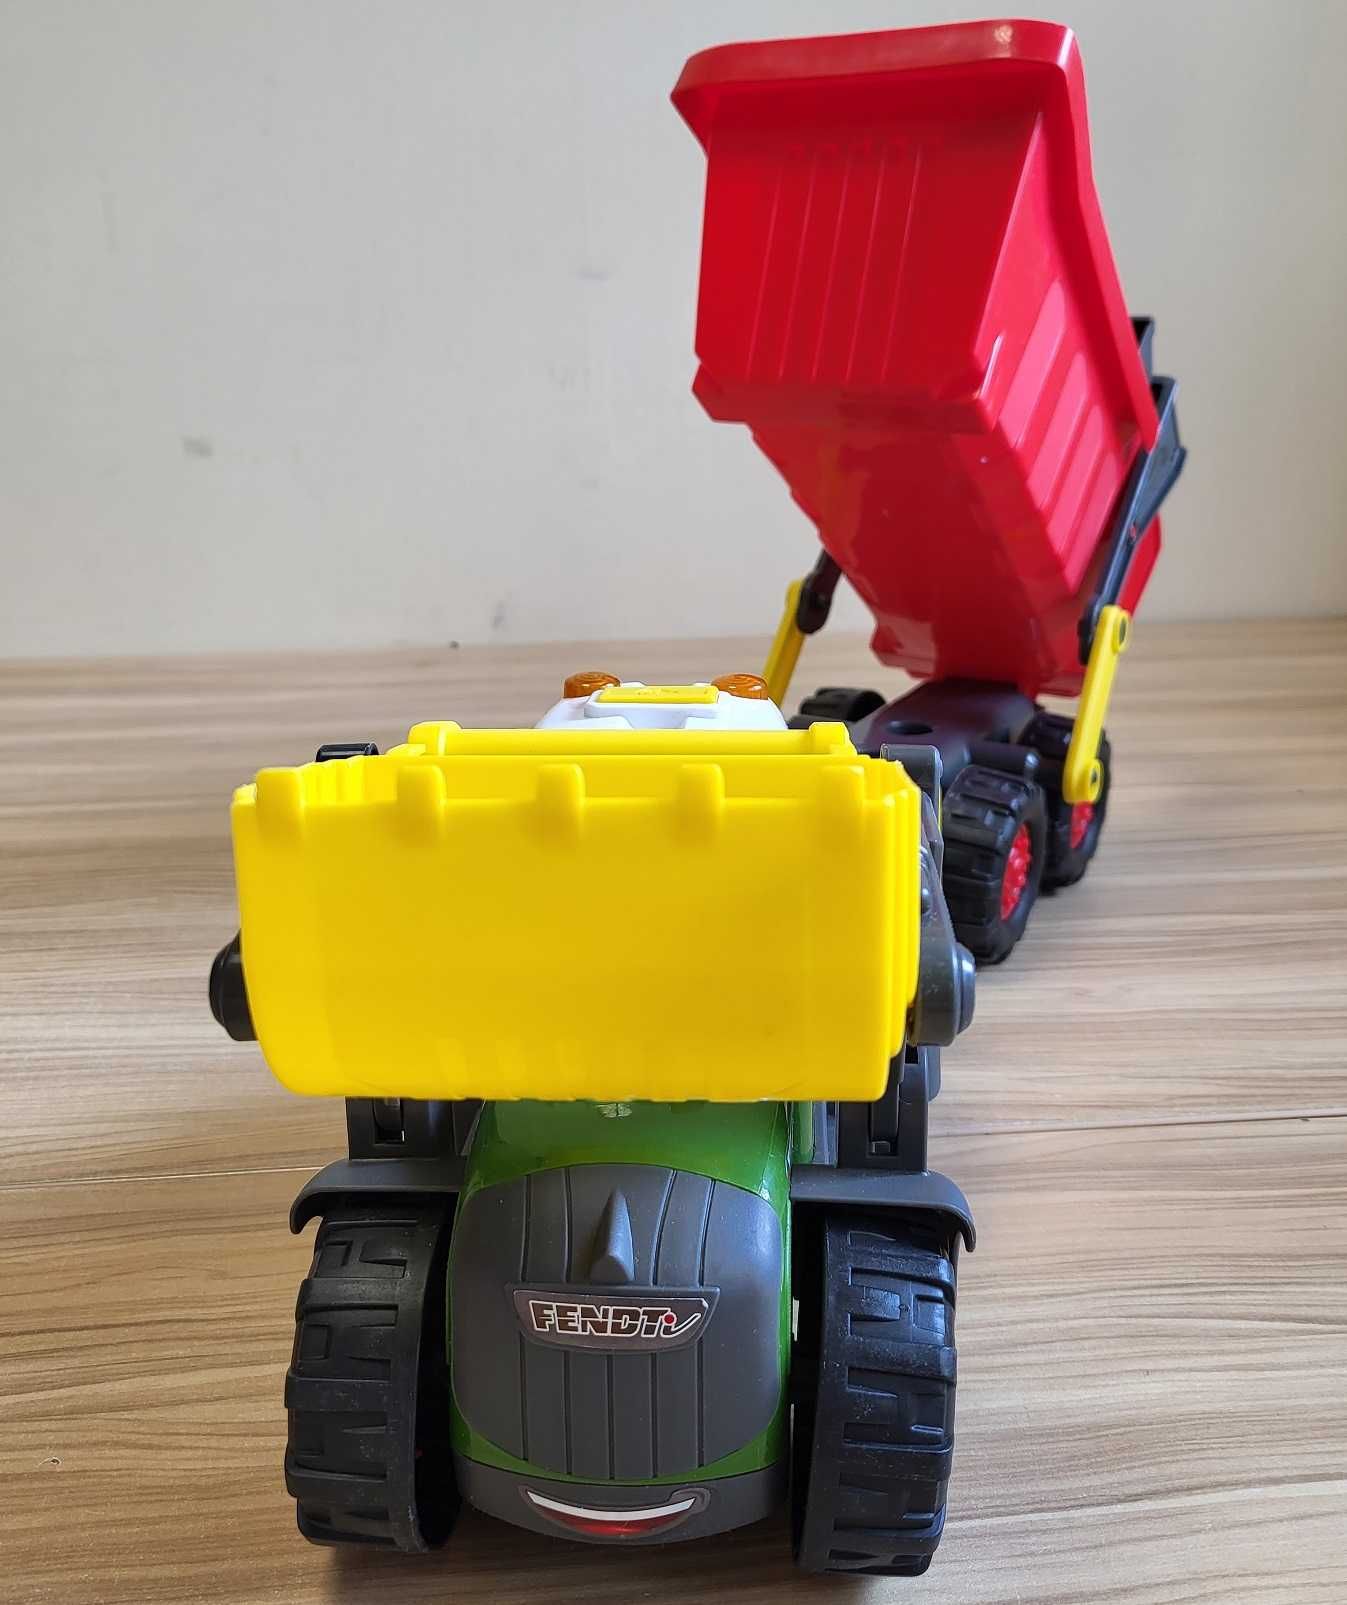 DICKIE ABC Happy Fendt traktor z przyczepą 65 cm dla dzieci